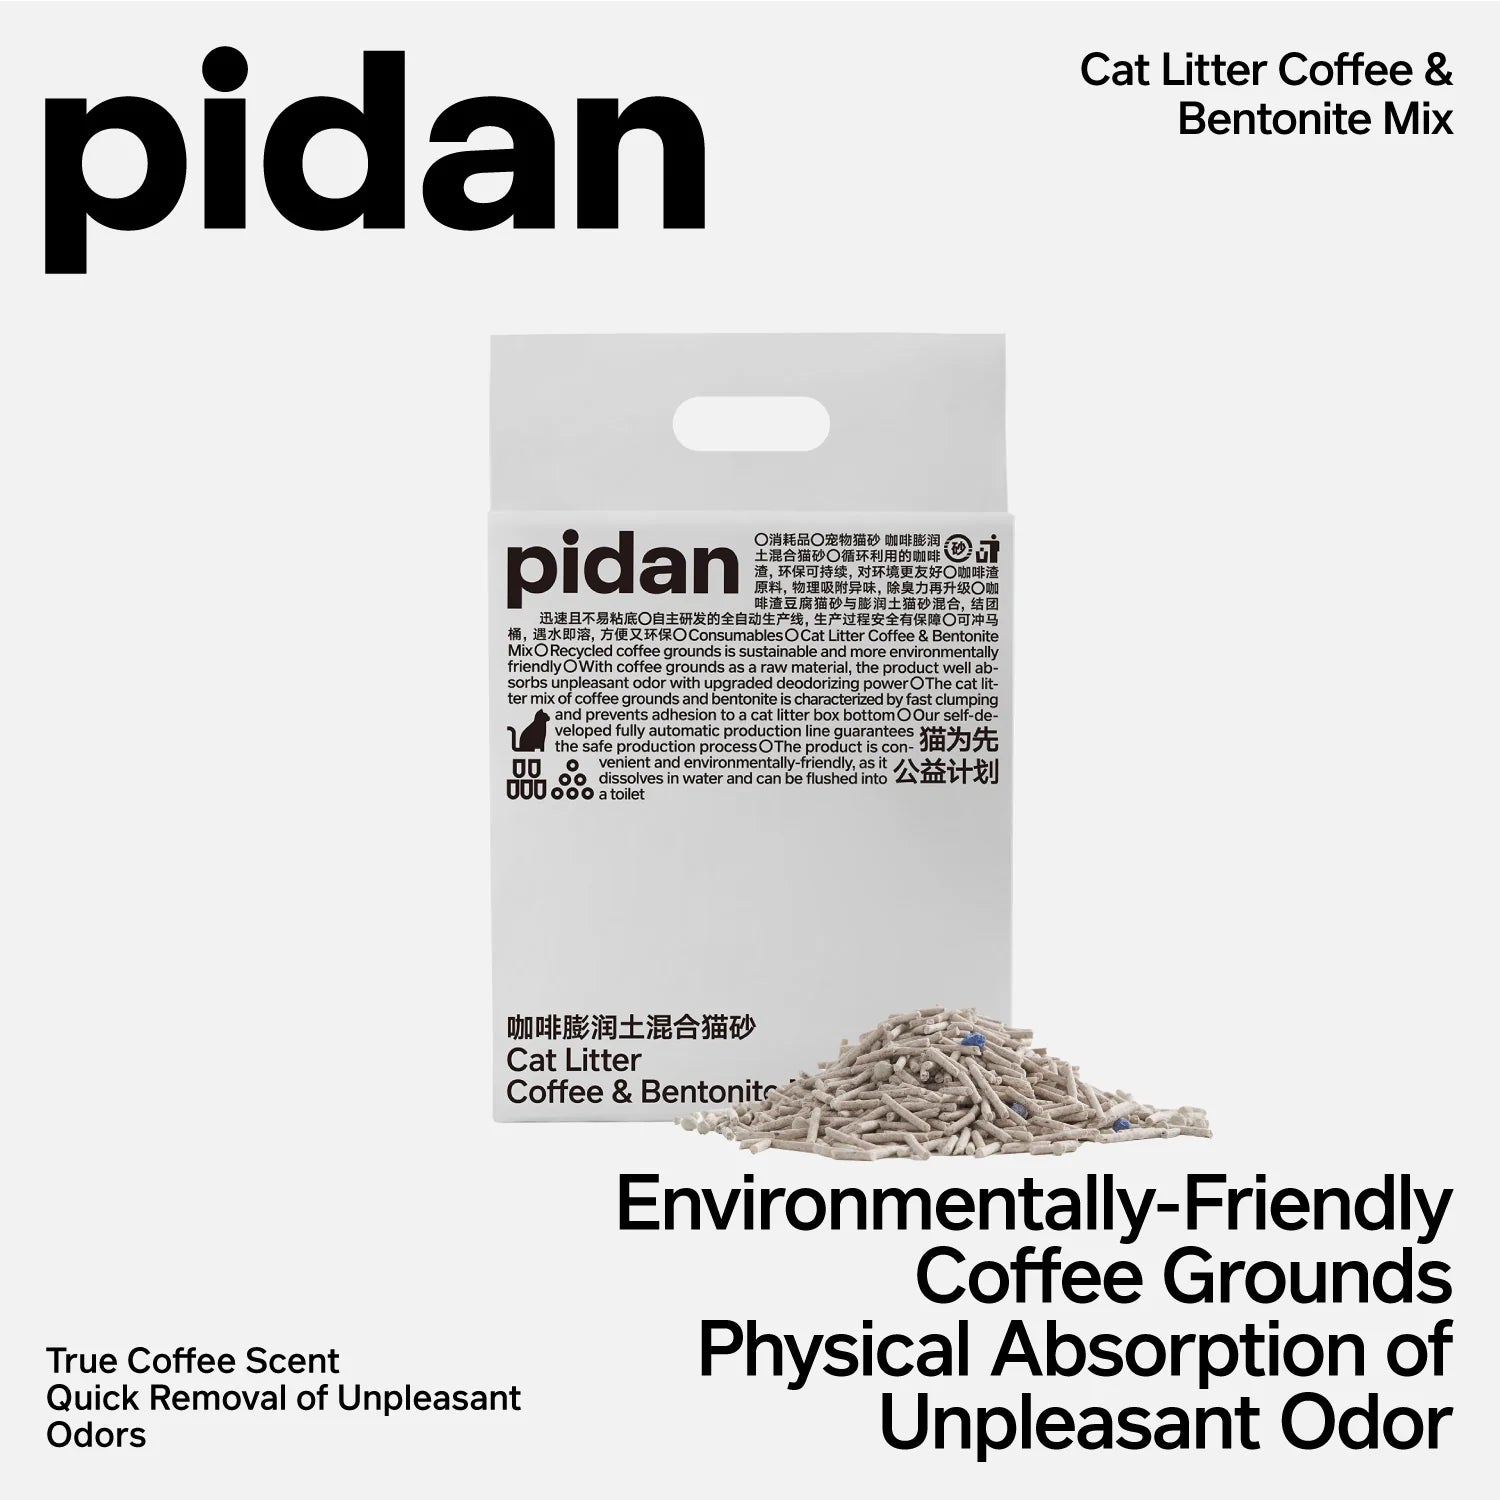 pidan Cat Litter Tofu Coffee and Bentonite Mix